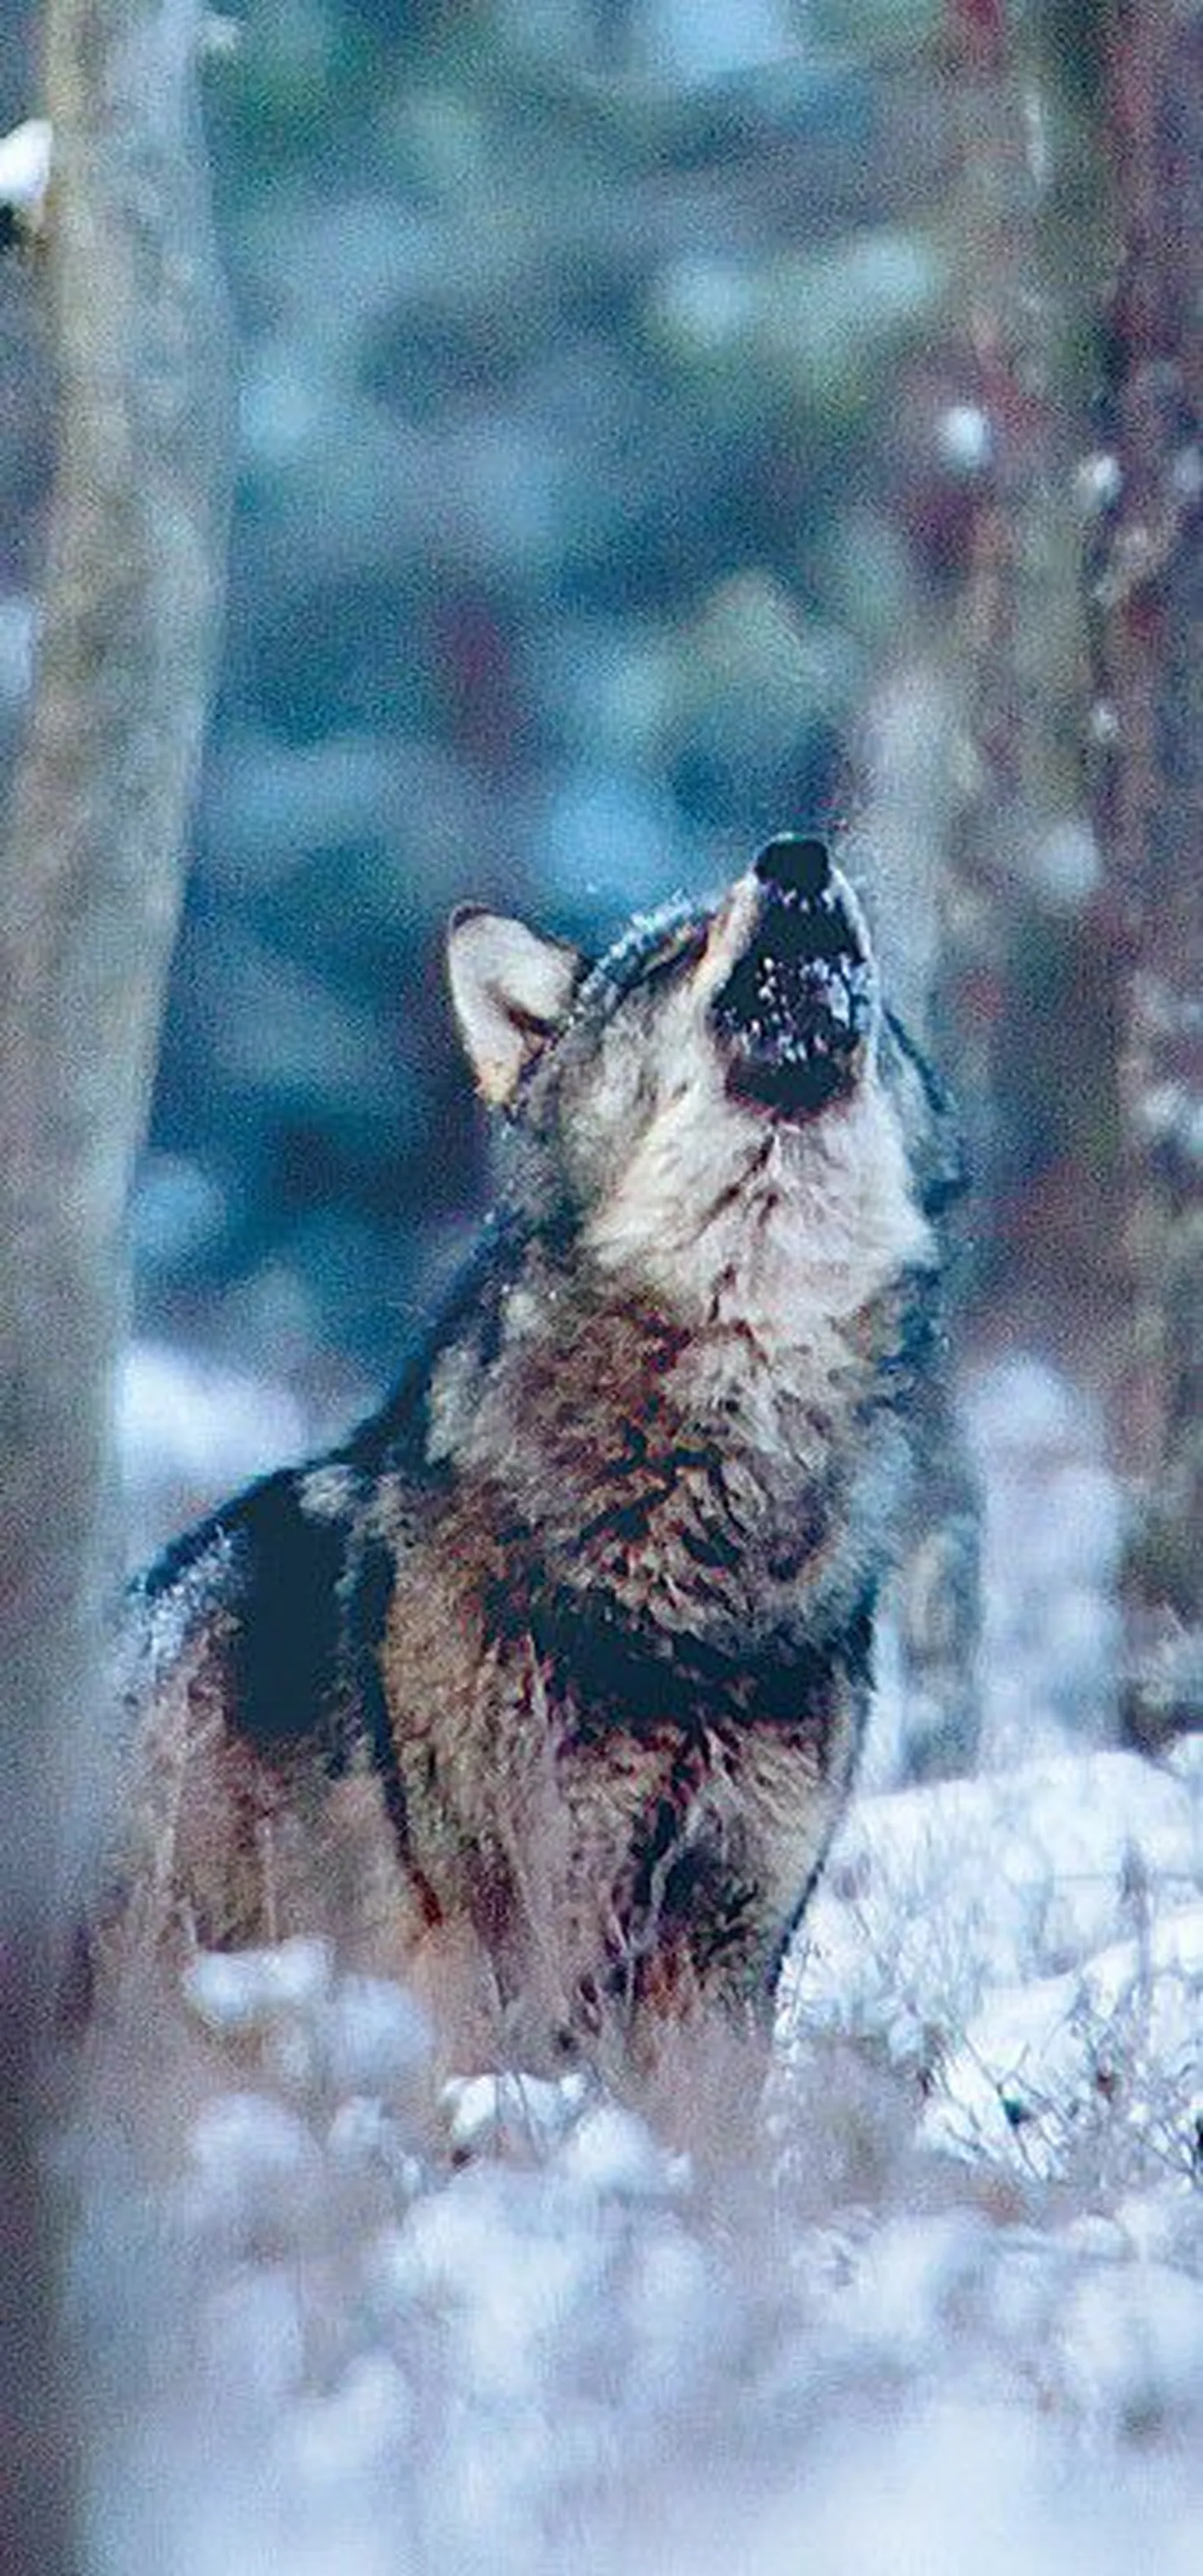 По мнению ученых, из-за недостоверной методики невозможно точно определить численность волков в эстонских лесах.